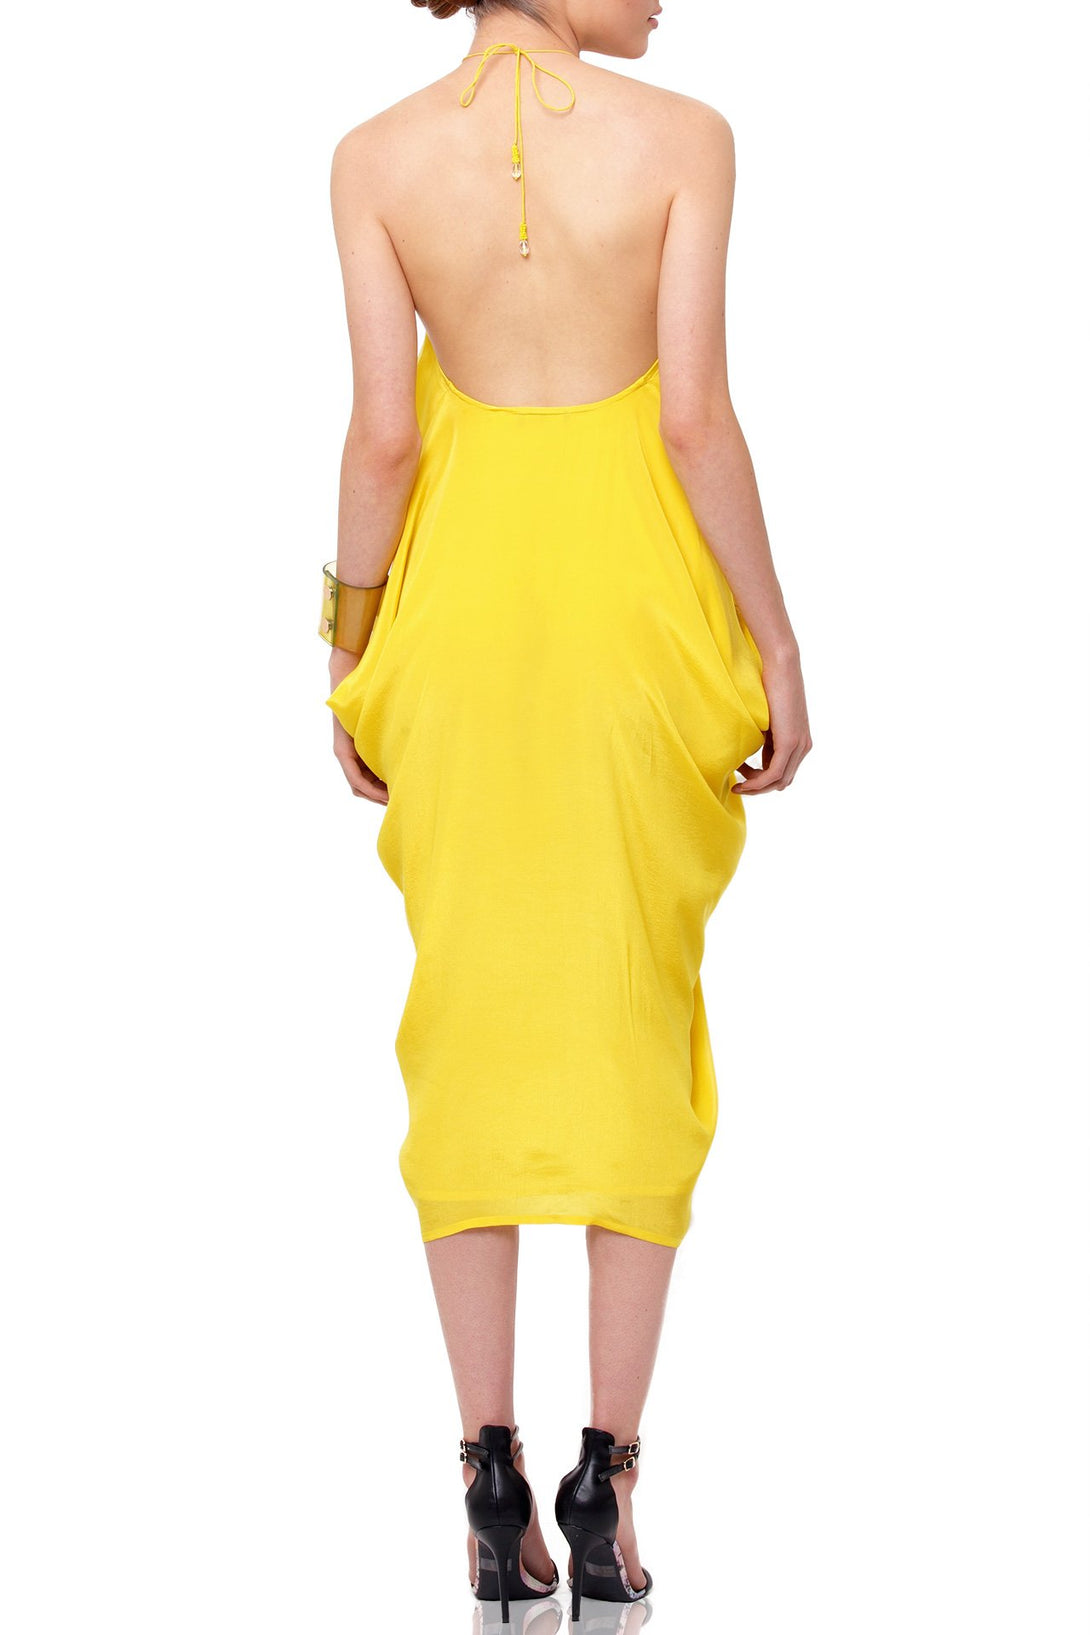  mini dress yellow, short kaftan, Shahida Parides, sexy mini dresses for women, embellished mini dress,